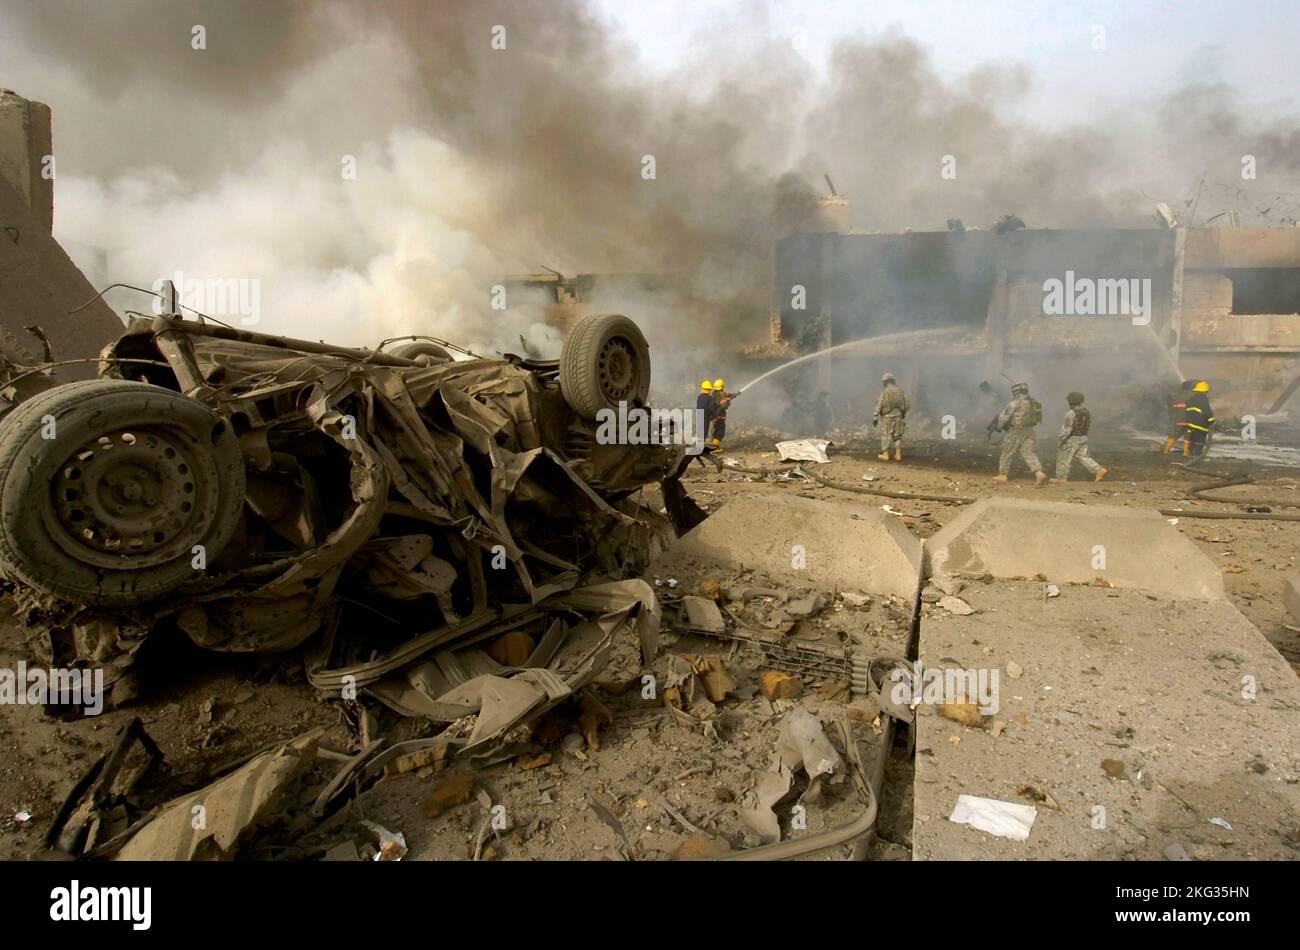 BAGHDAD, IRAQ - 27 agosto 2006 - Un 'veicolo nato improvvisato dispositivo esplosivo' o auto bomba dopo l'esplosione su una strada al di fuori della carta da giornale al Sabah Foto Stock